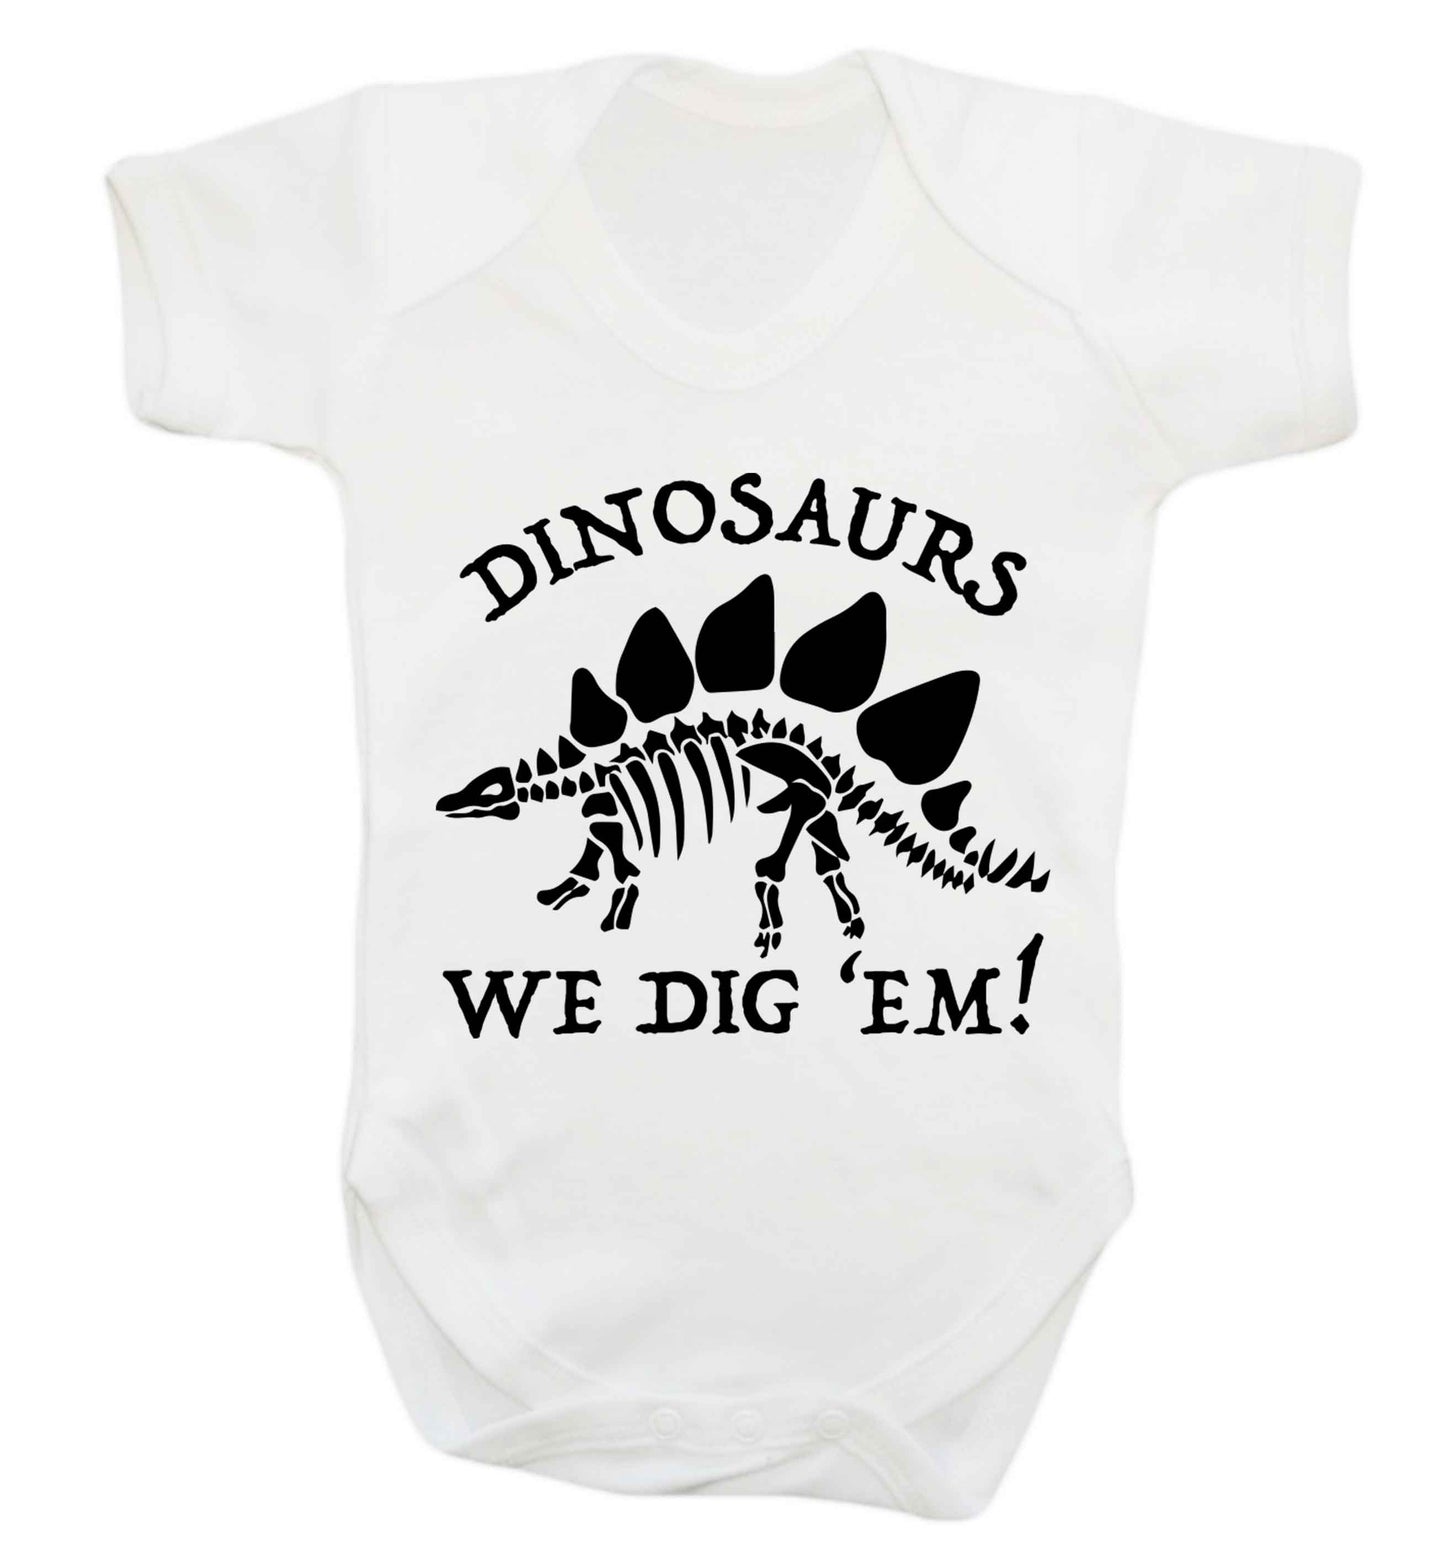 Dinosaurs we dig 'em! Baby Vest white 18-24 months